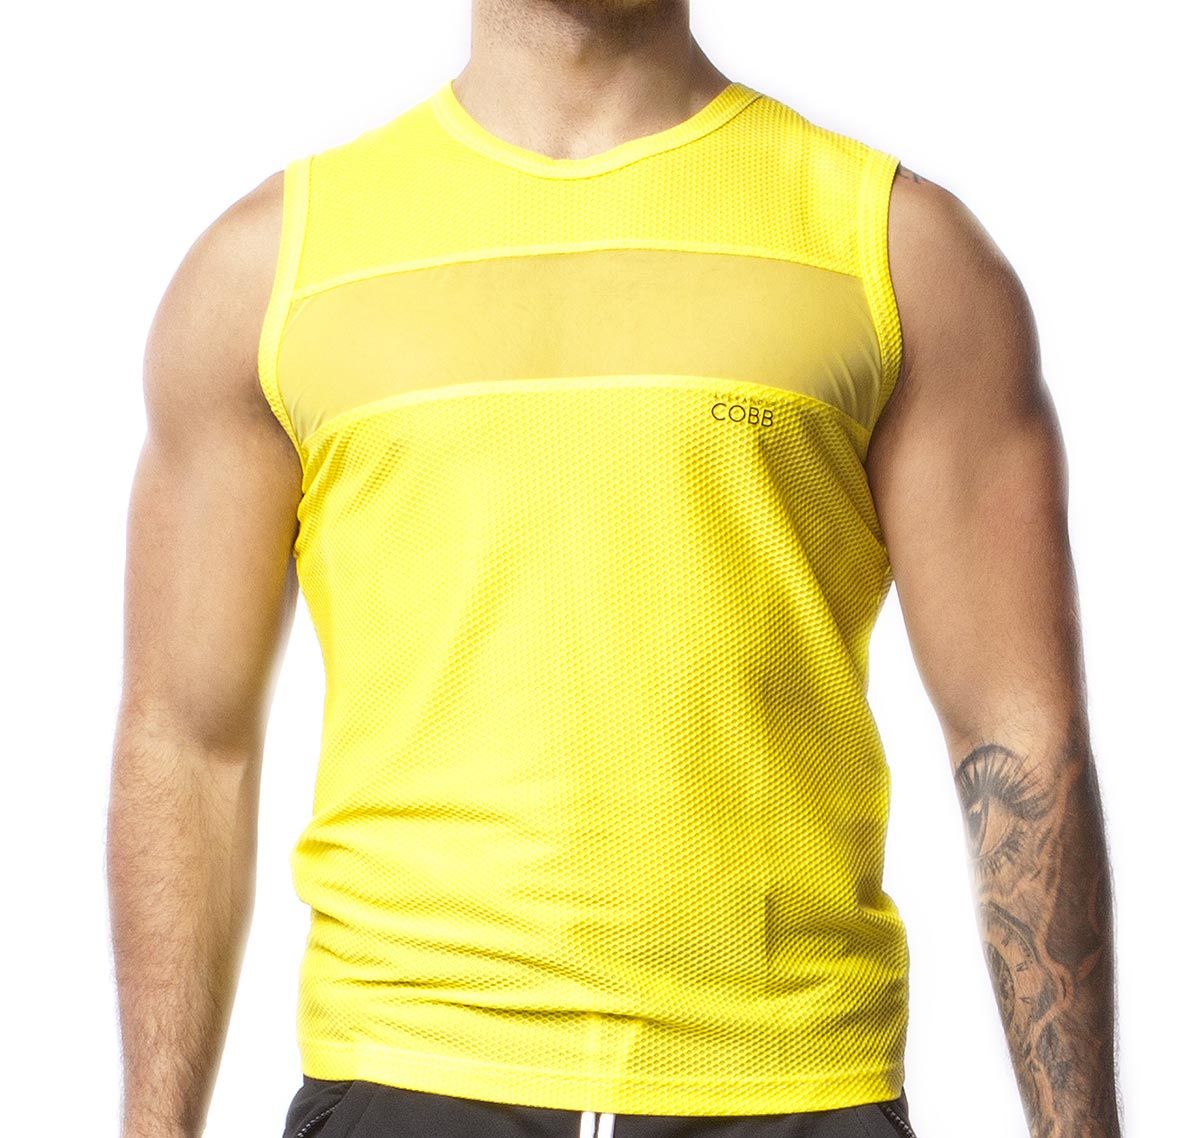 Alexander COBB Camiseta de tirantes TANK TOP MESH YELLOW, jaune